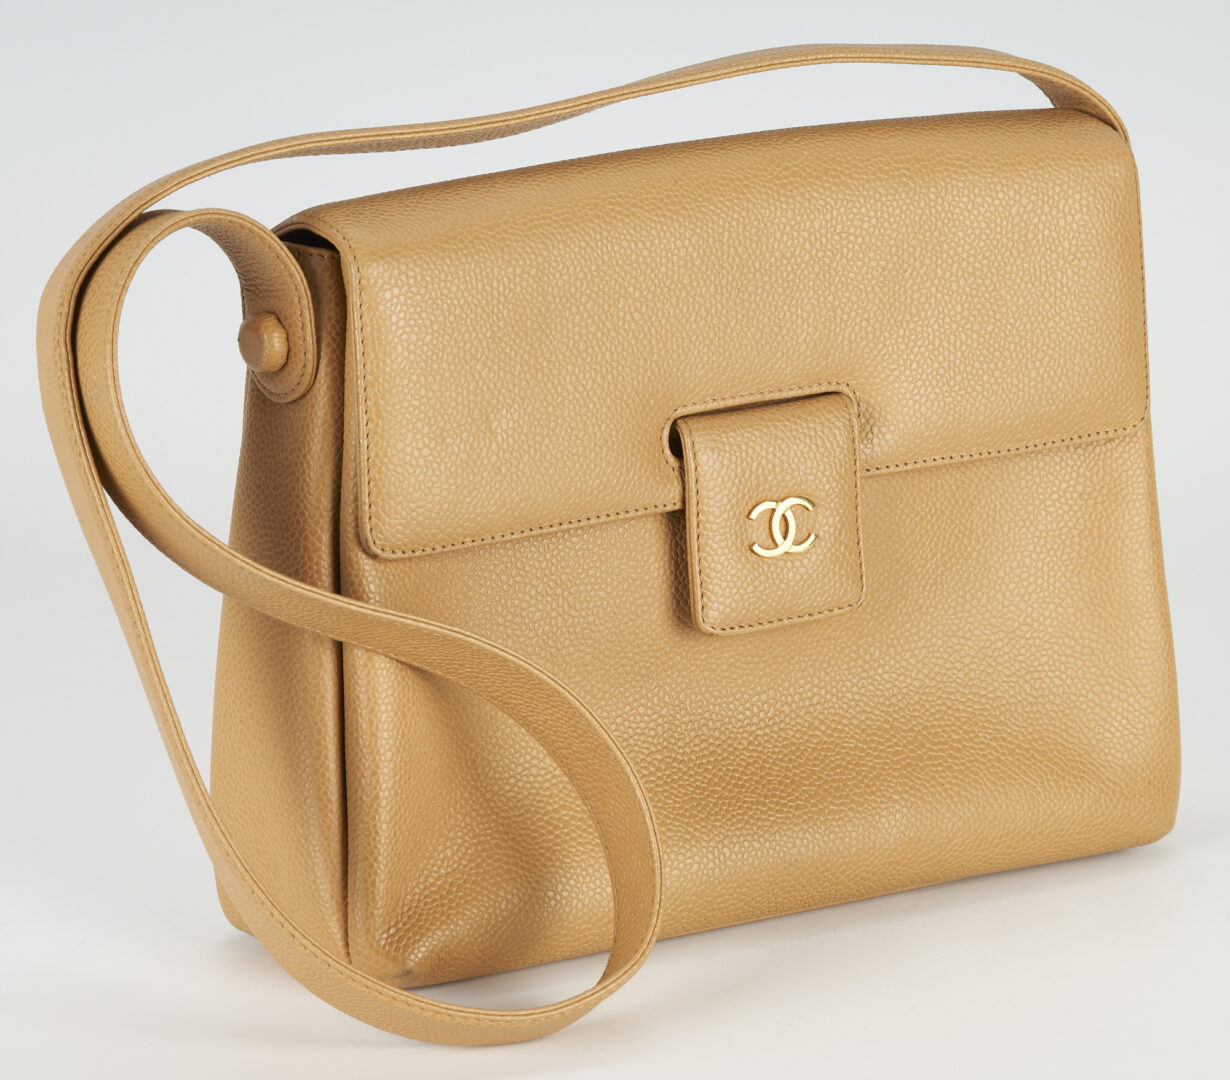 Lot 96: Vintage Chanel Tan Pebble Leather Shoulder Bag